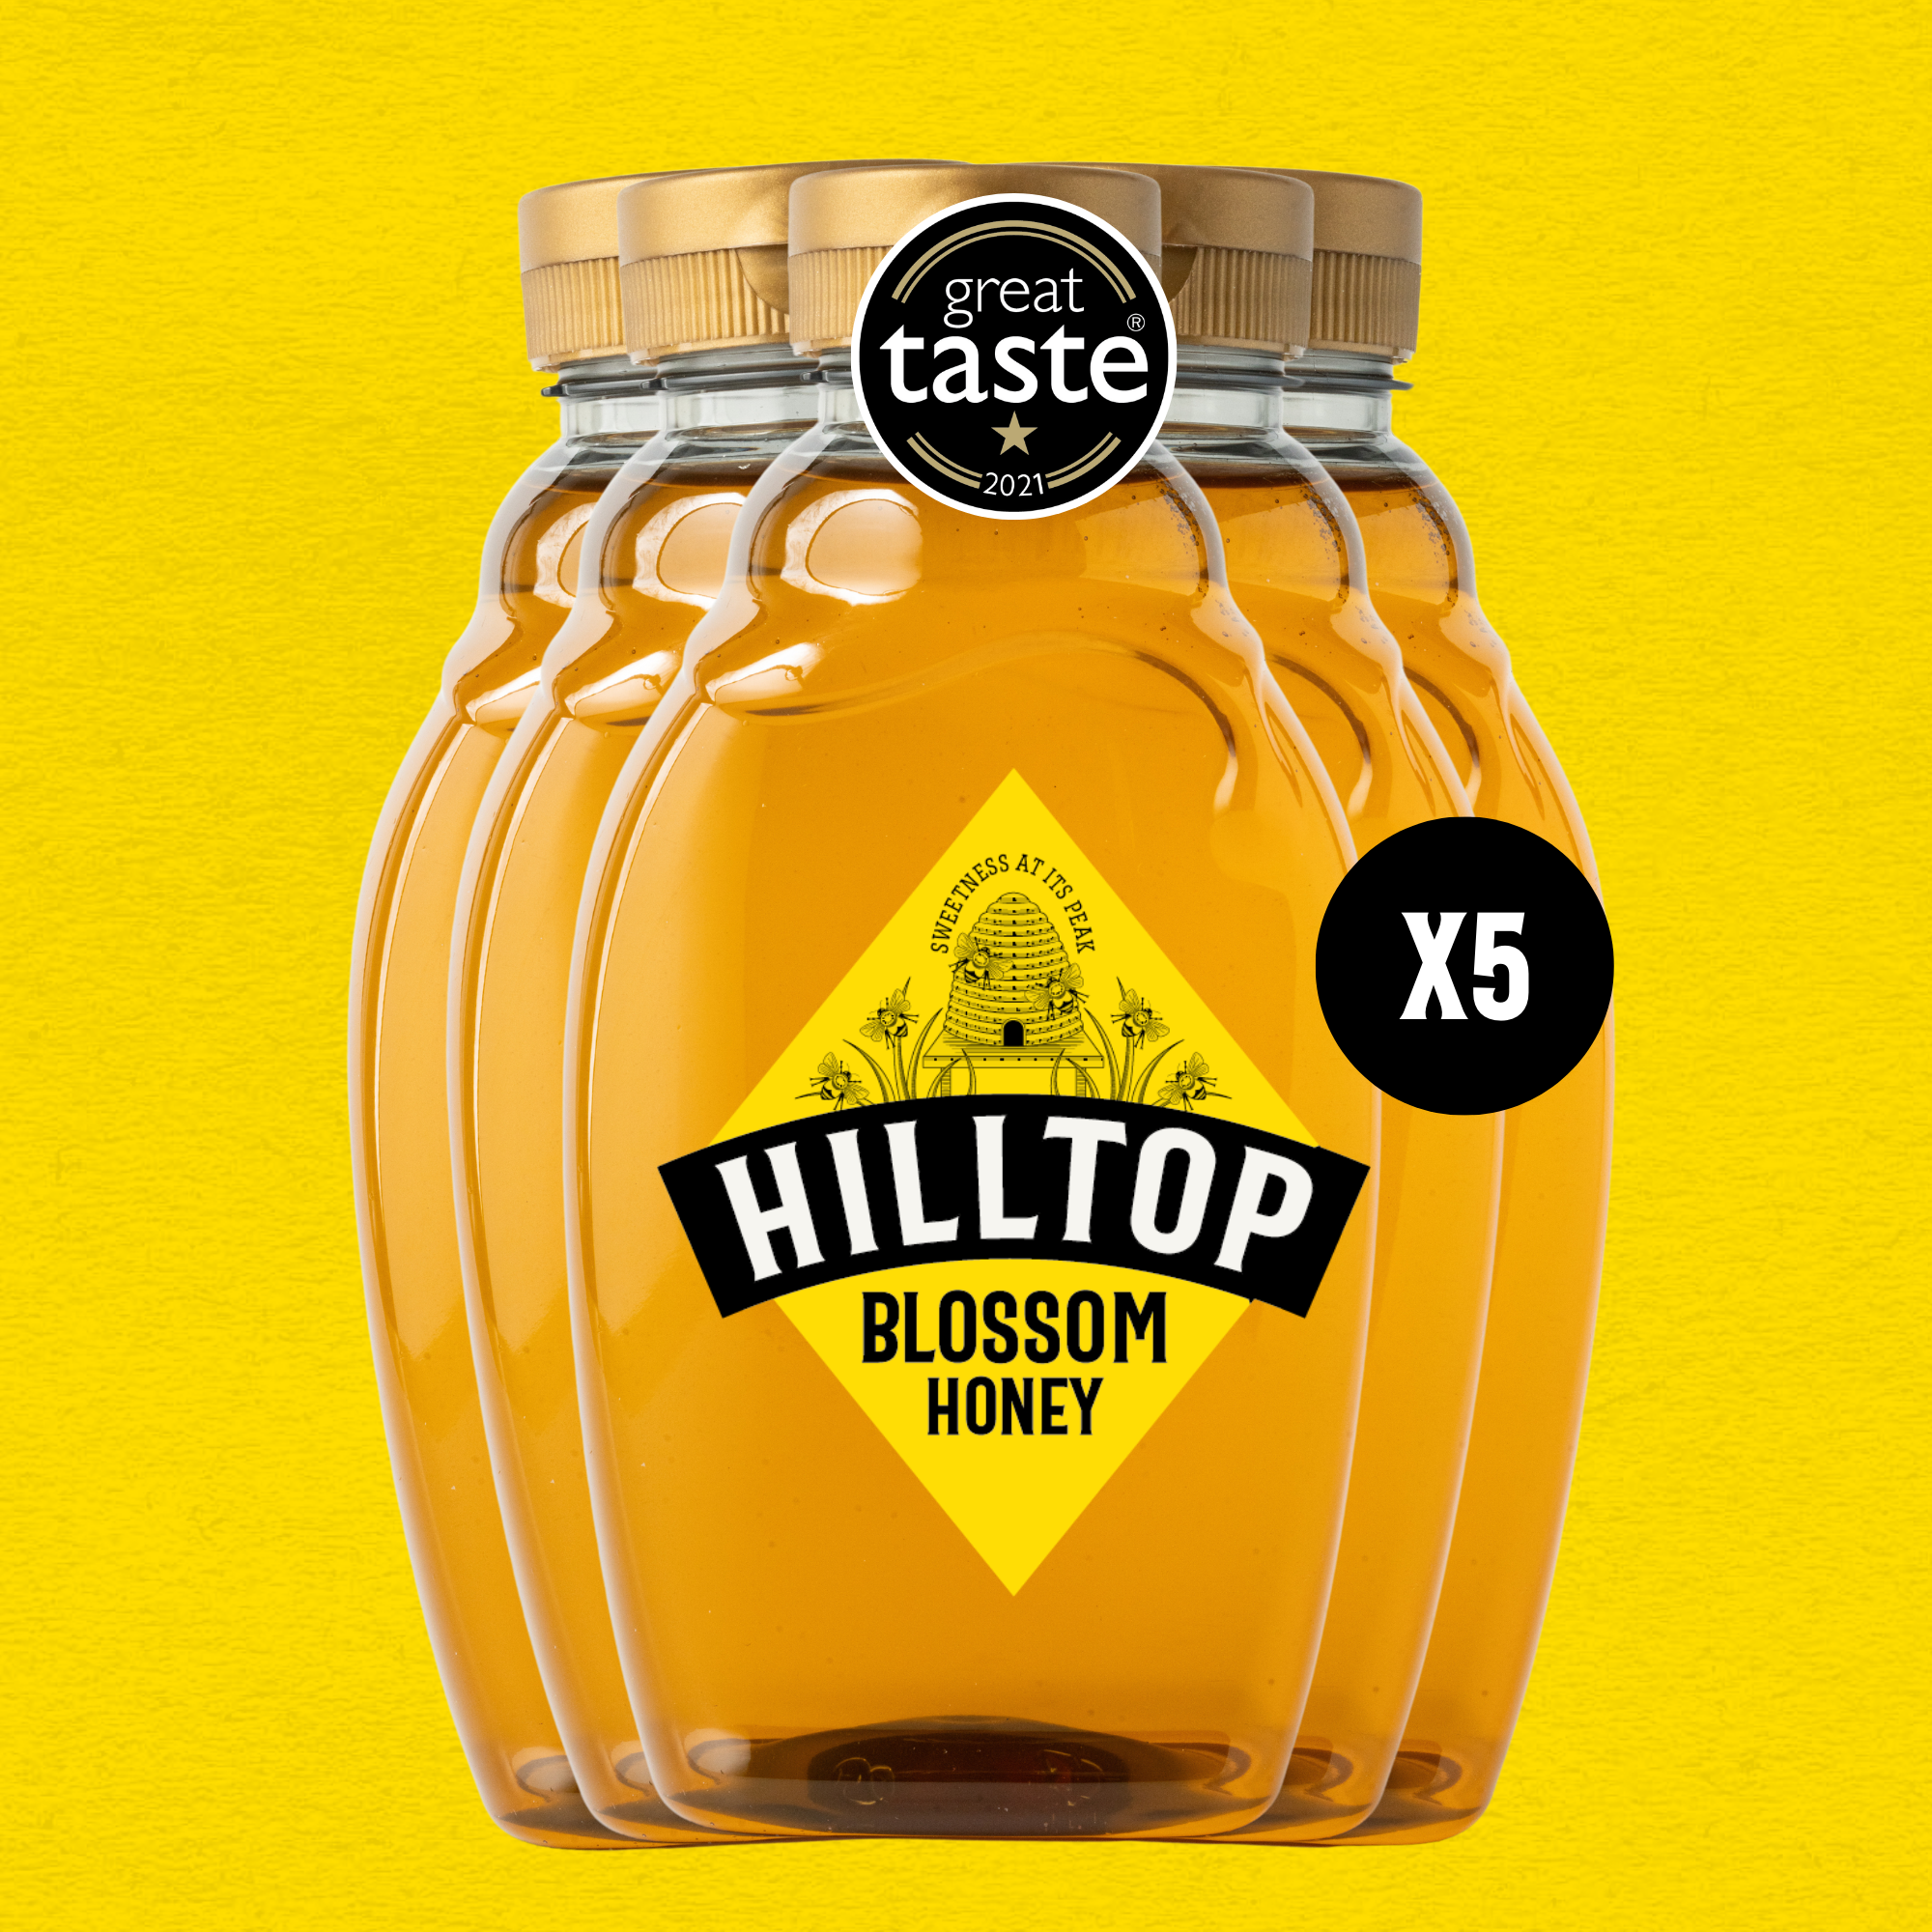 Blossom Honey, Big Squeezy Saver Pack 720g x 5